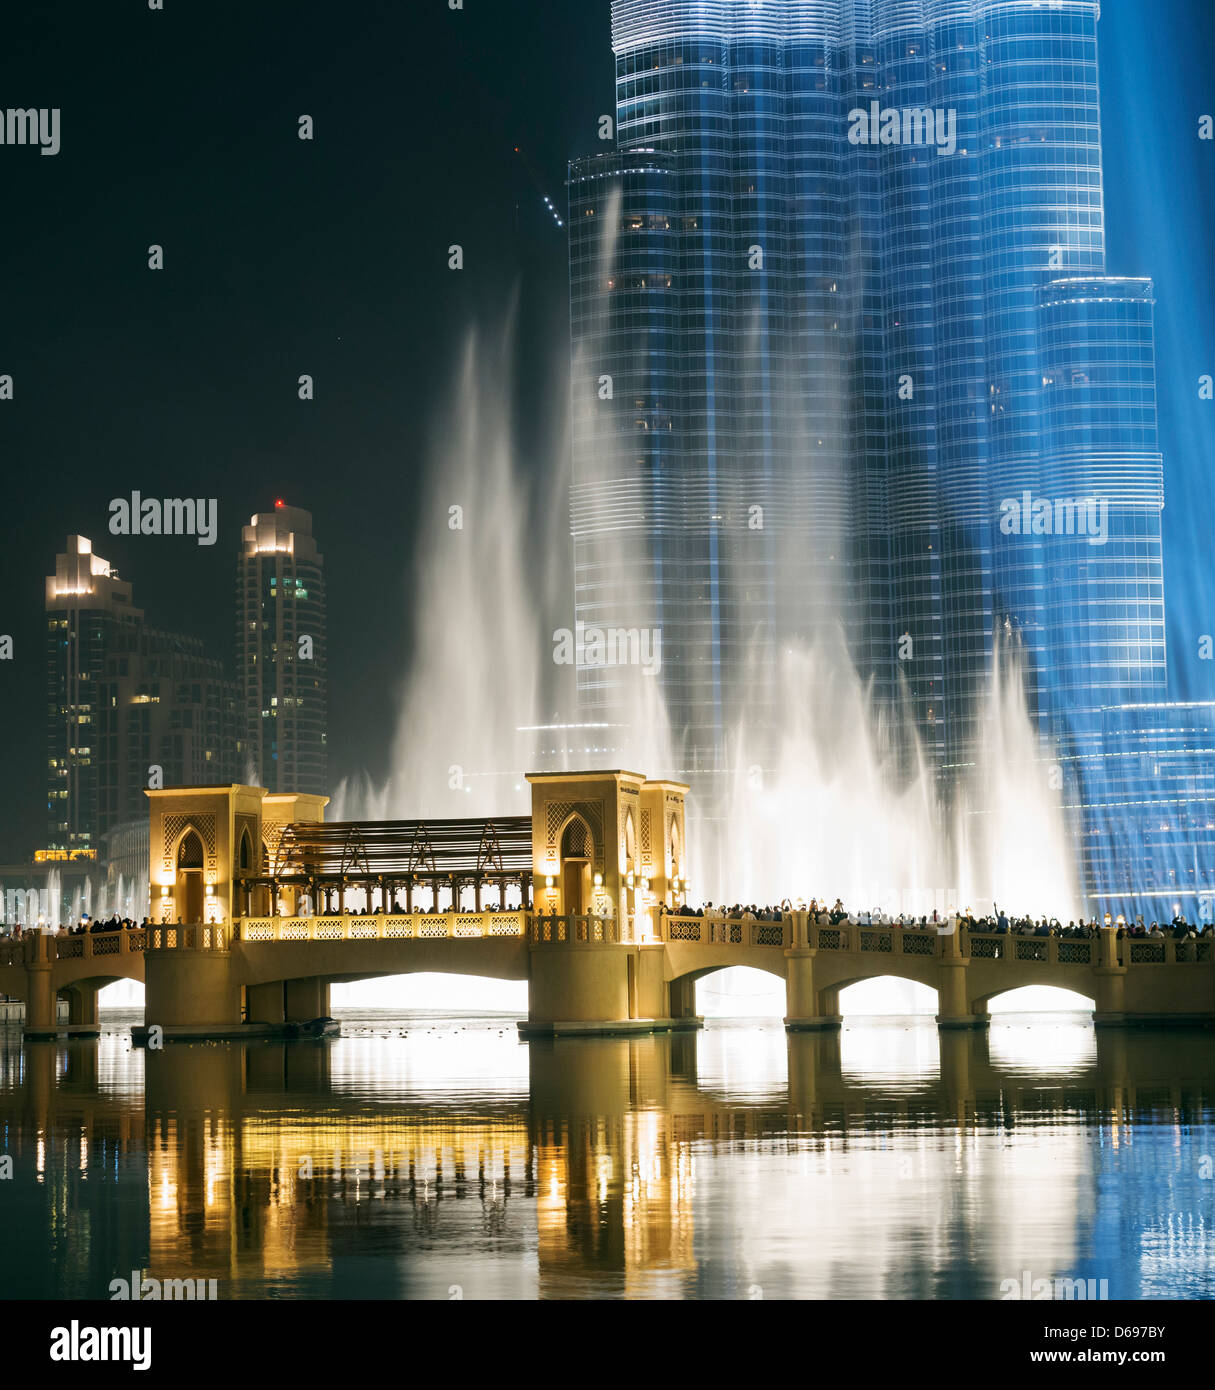 Vista nocturna de la fuente de Dubai en el Dubai Mall, en el centro de Dubai, Emiratos Árabes Unidos Foto de stock